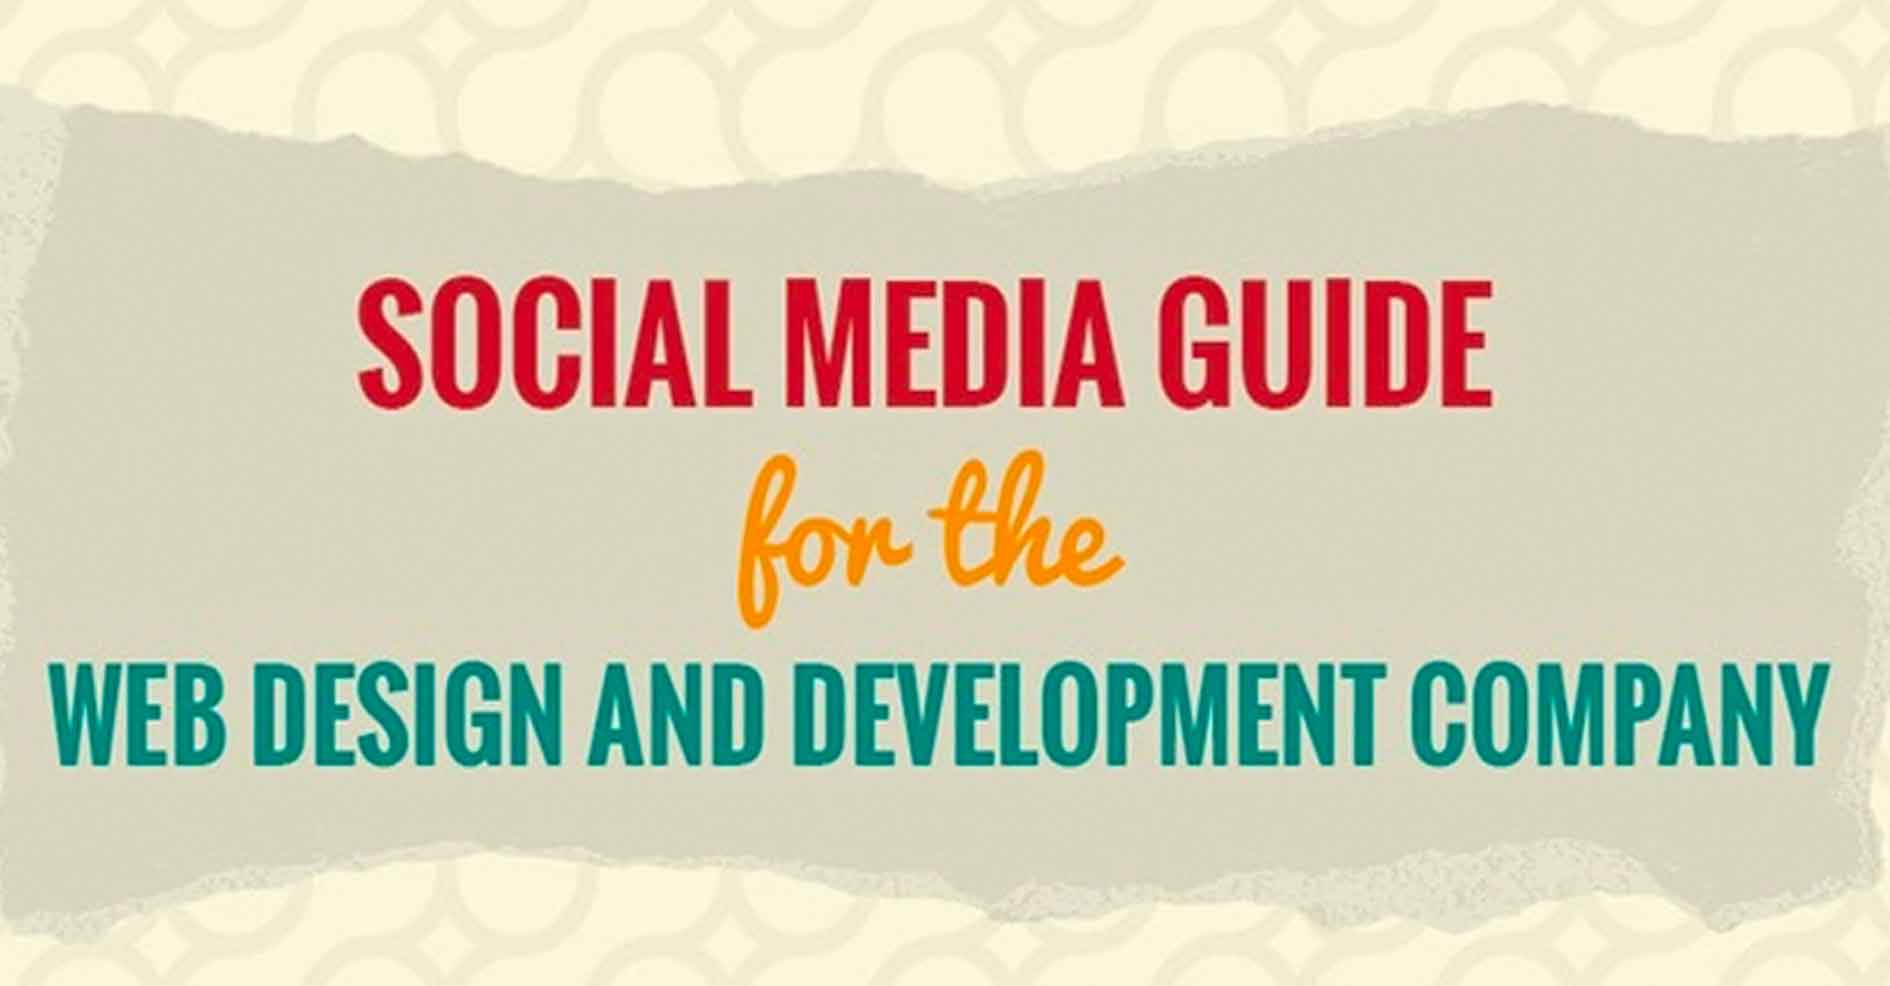 Web设计和开发公司的社交媒体指南